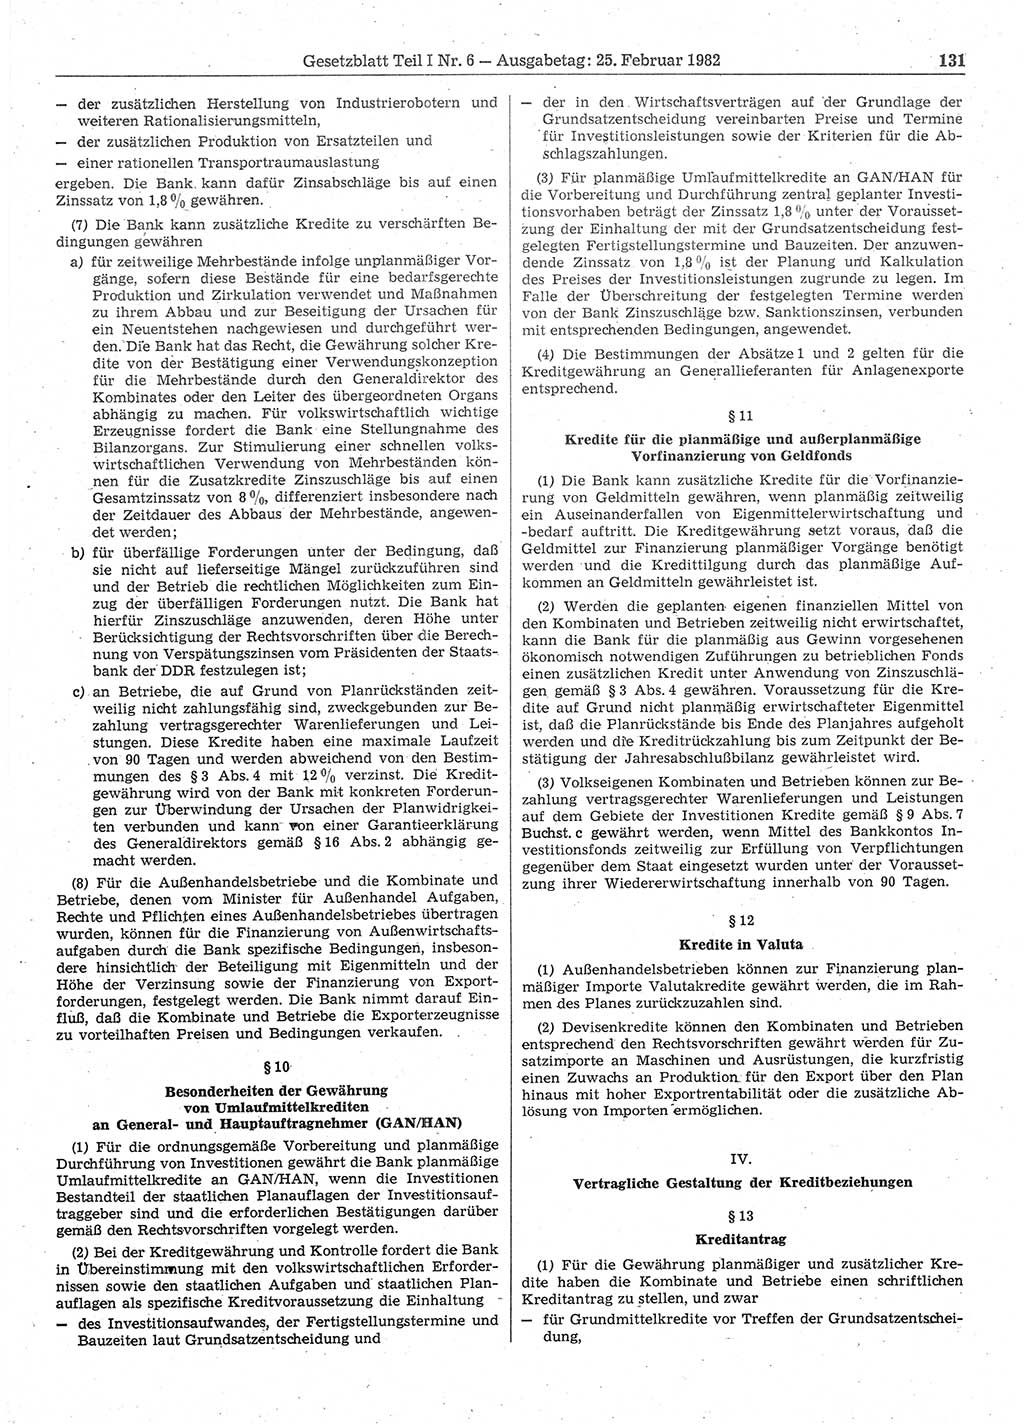 Gesetzblatt (GBl.) der Deutschen Demokratischen Republik (DDR) Teil Ⅰ 1982, Seite 131 (GBl. DDR Ⅰ 1982, S. 131)